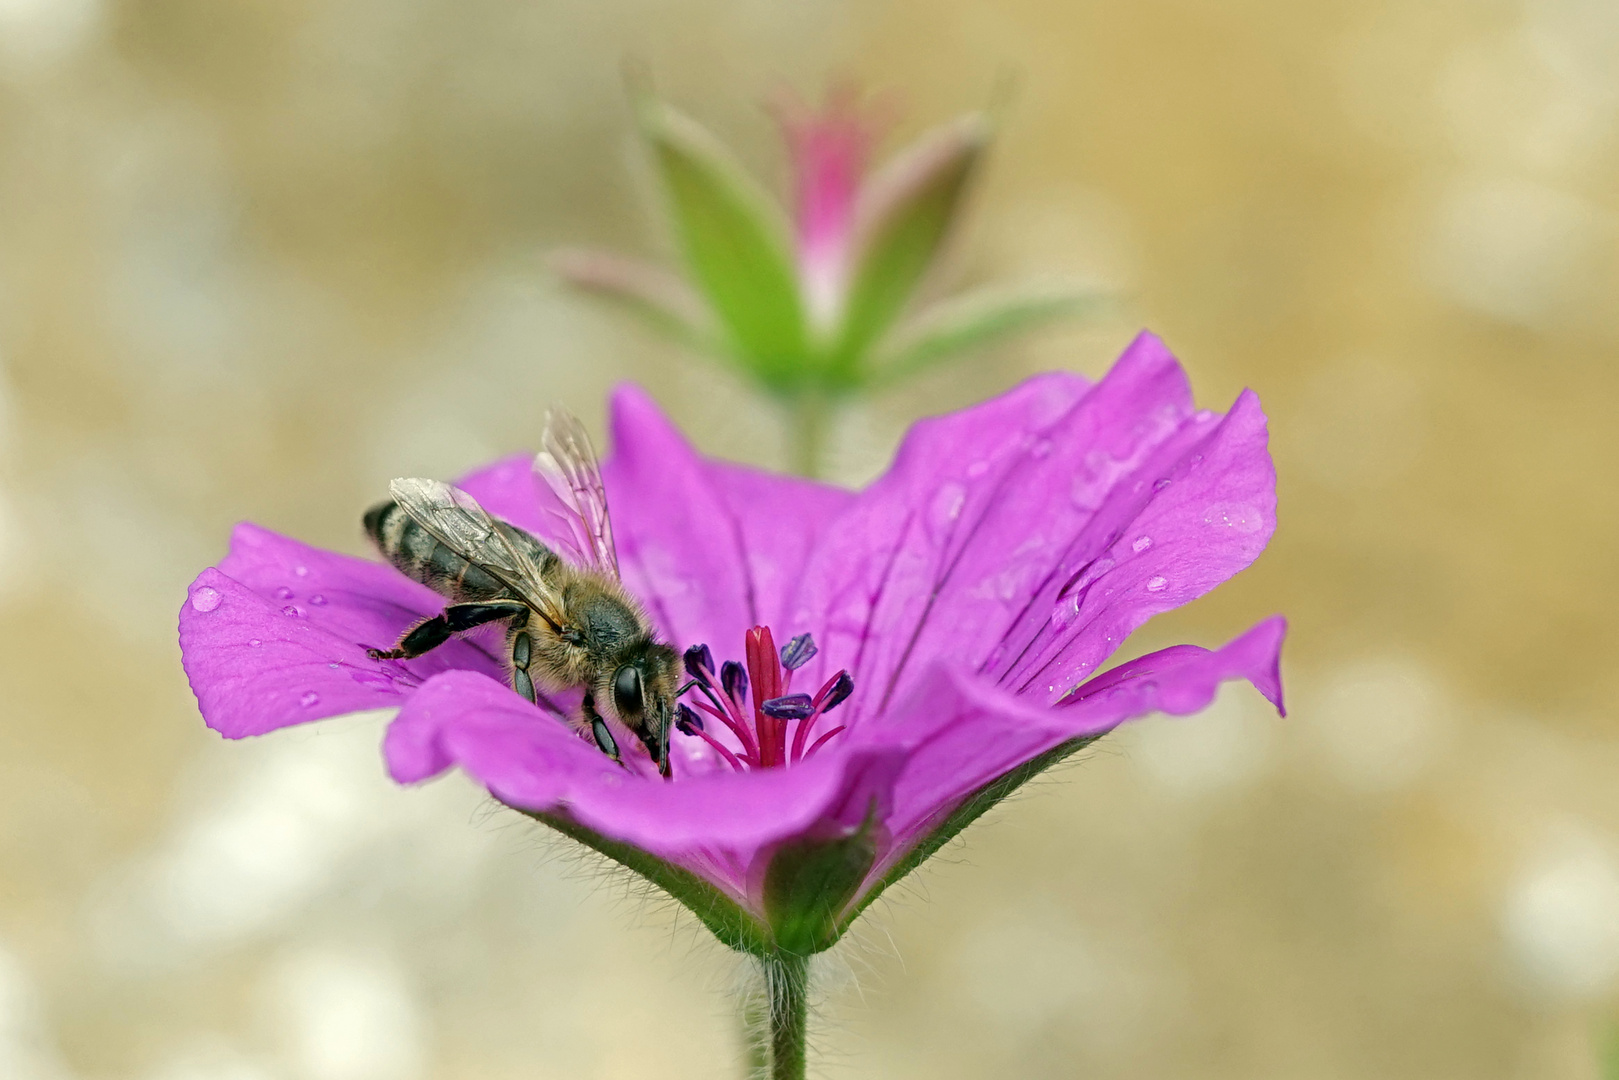 Biene beim Pollensammeln